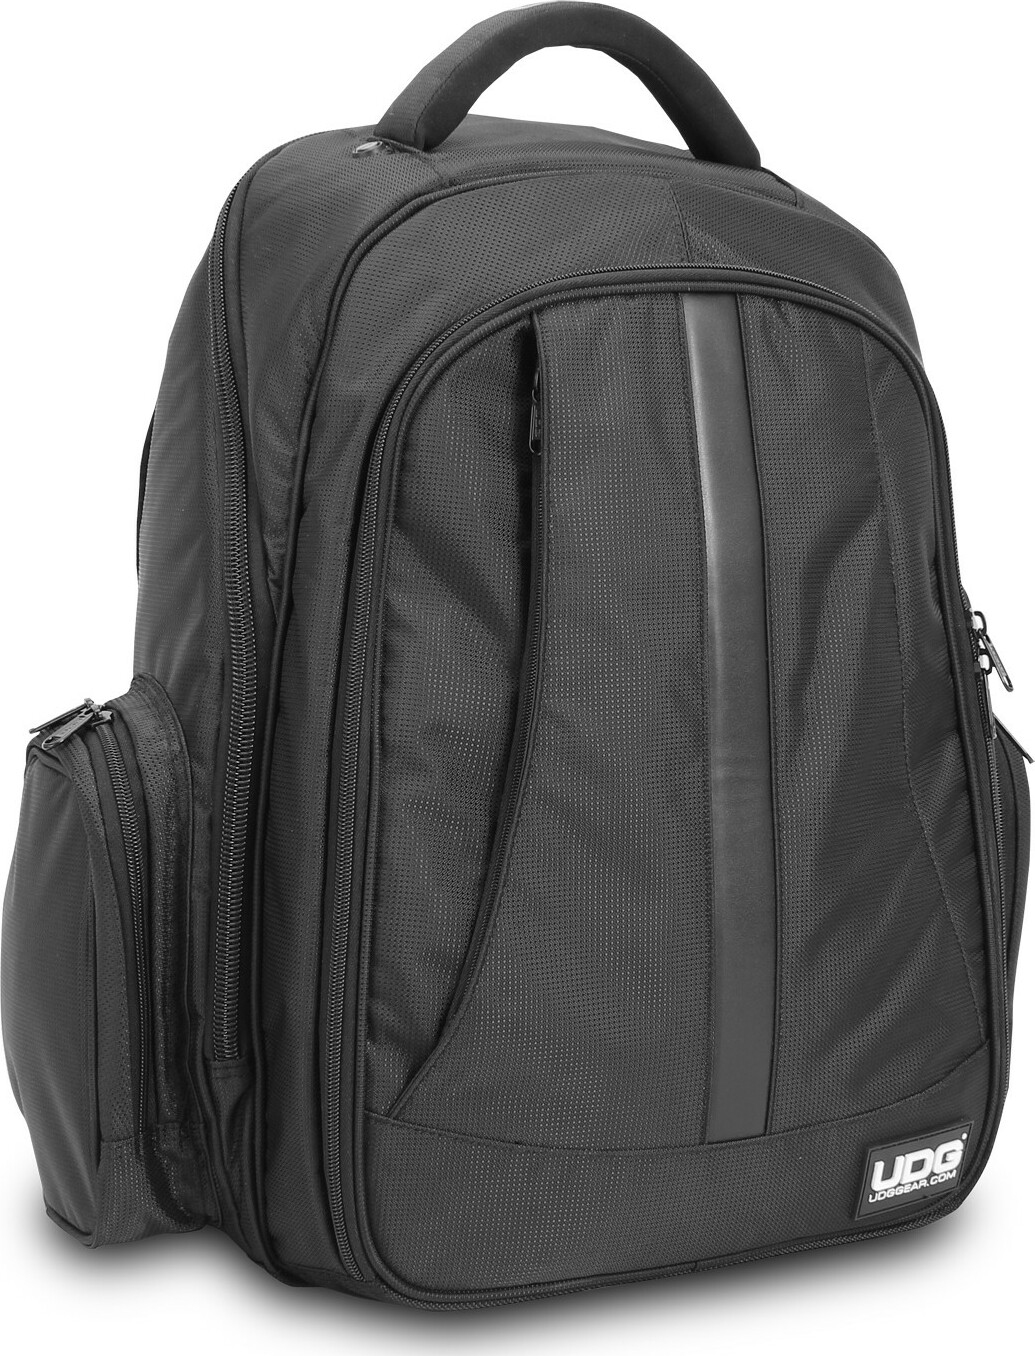 Udg Ultimate Backpack Black/orange - DJ trolley - Main picture